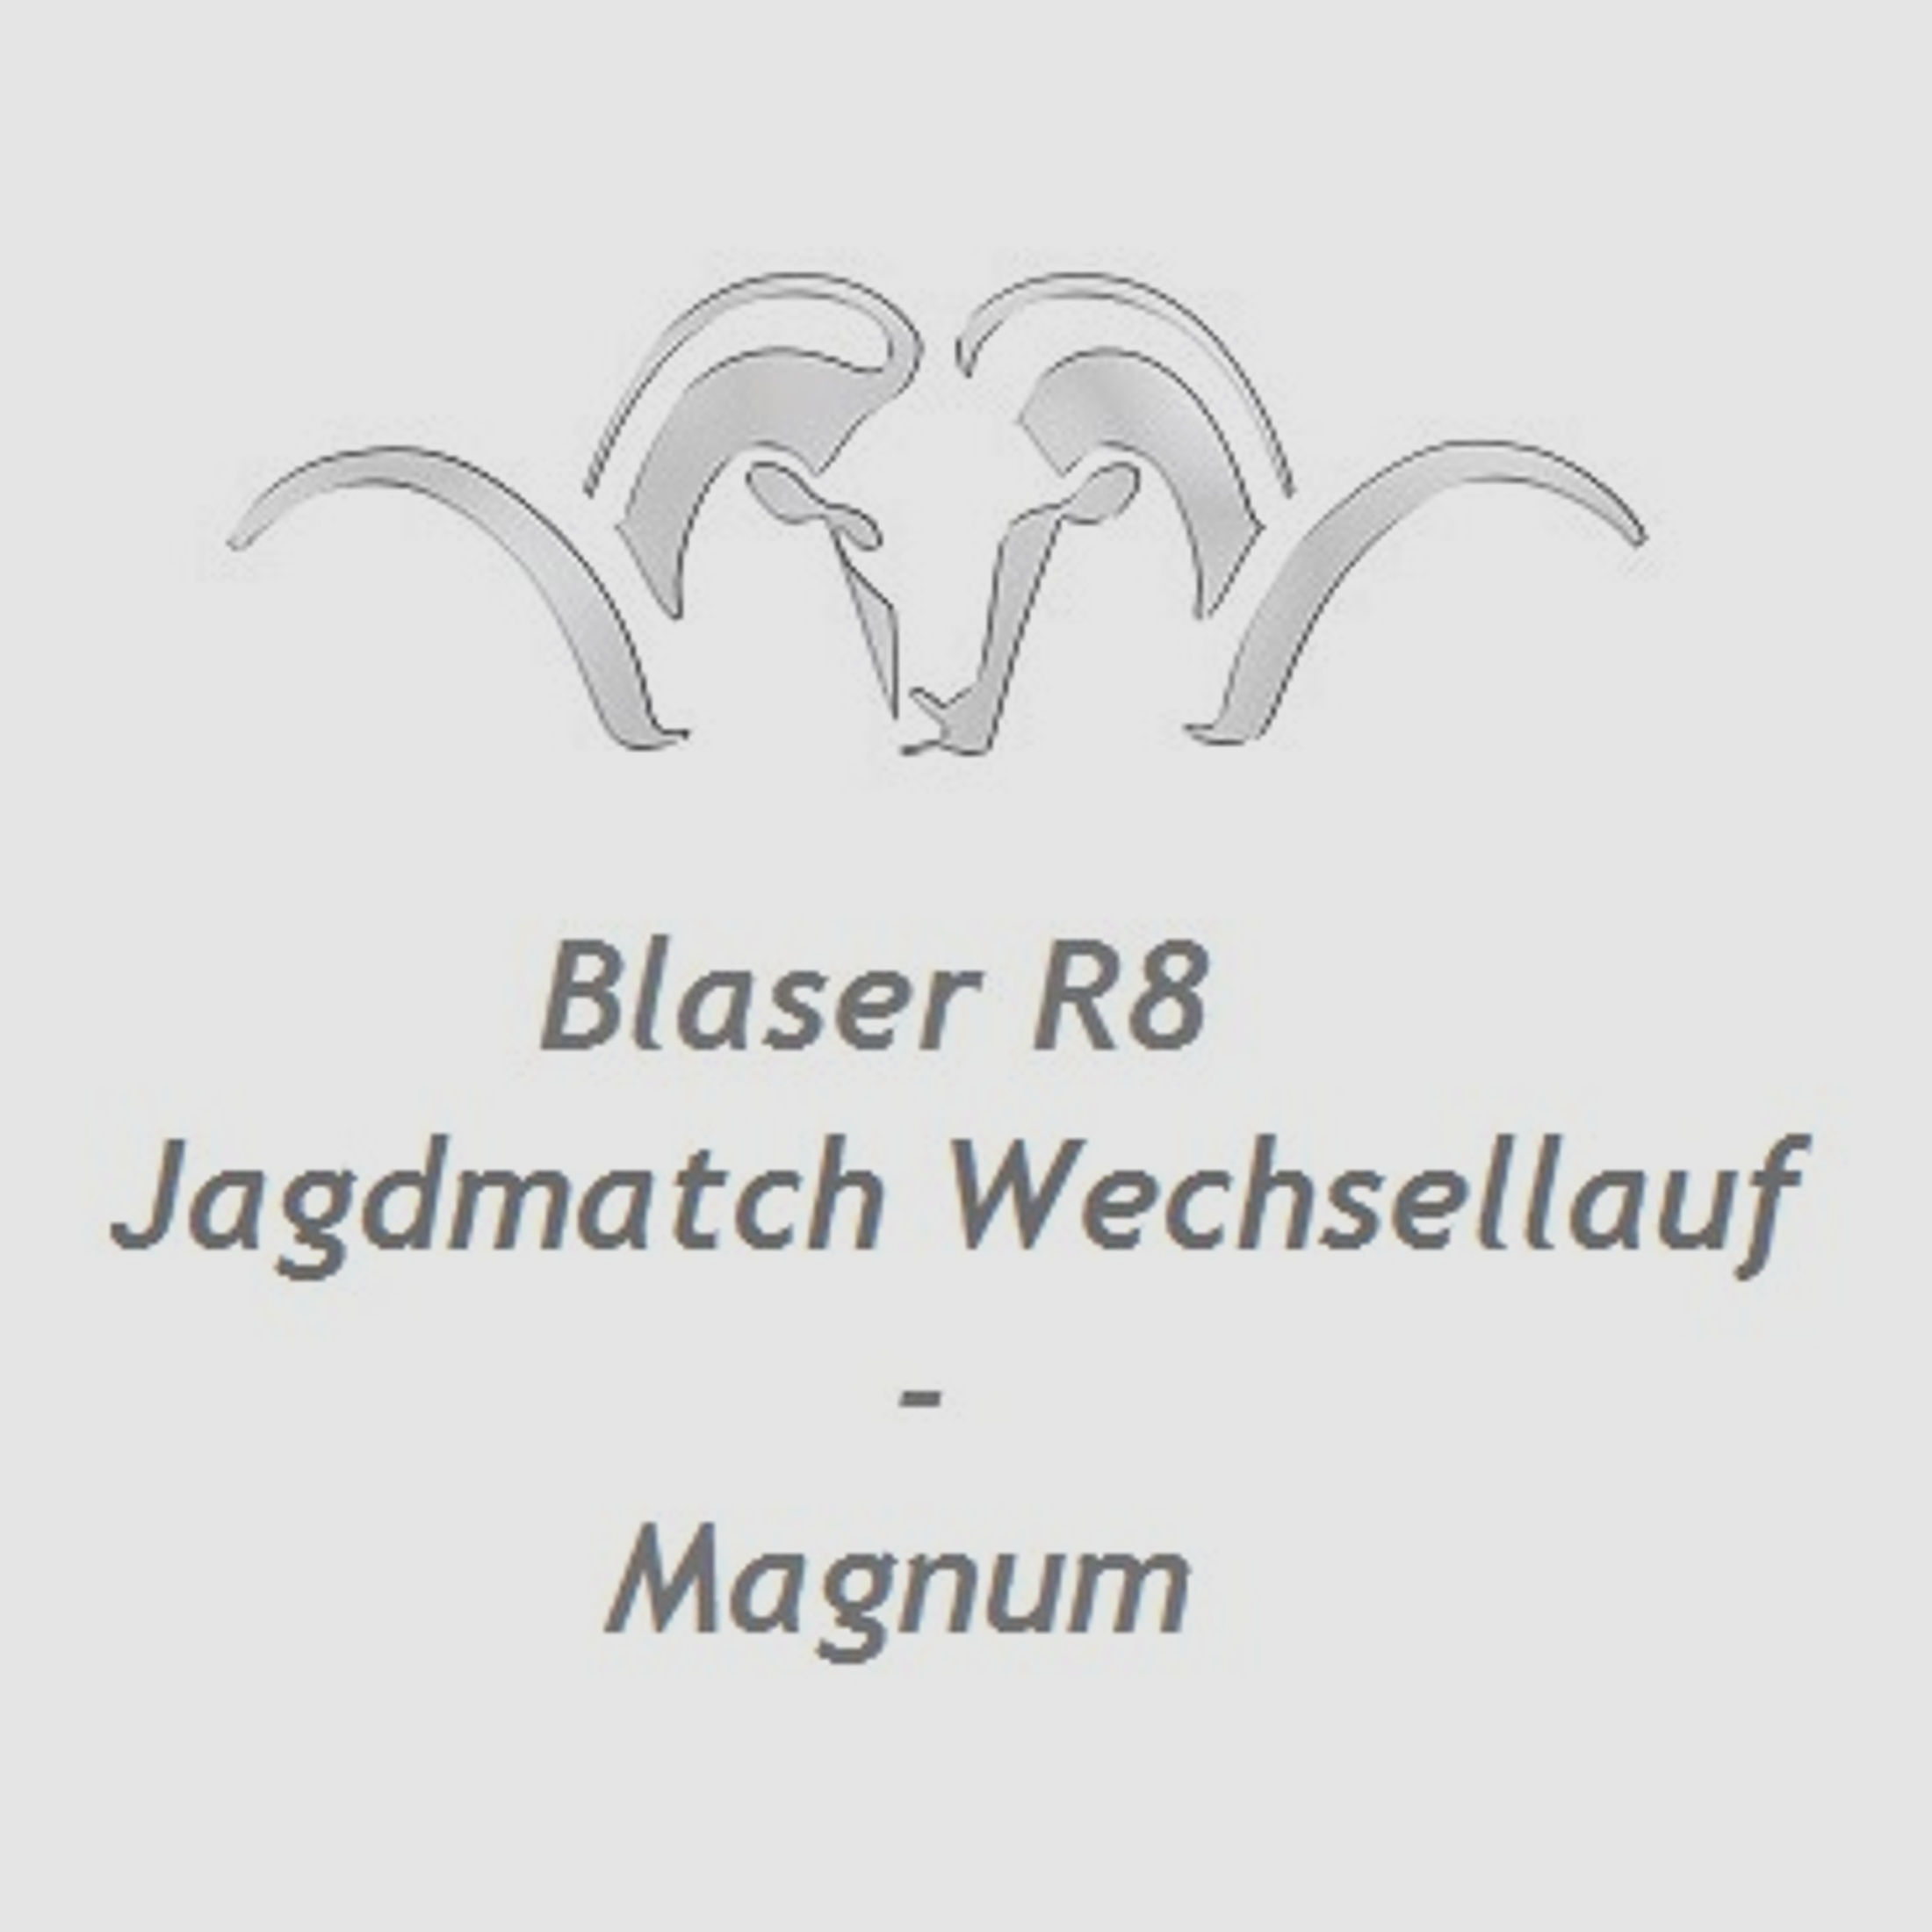 Blaser R8 Jagdmatch Austauschlauf - Magnum ... mit Gewinde M18x1